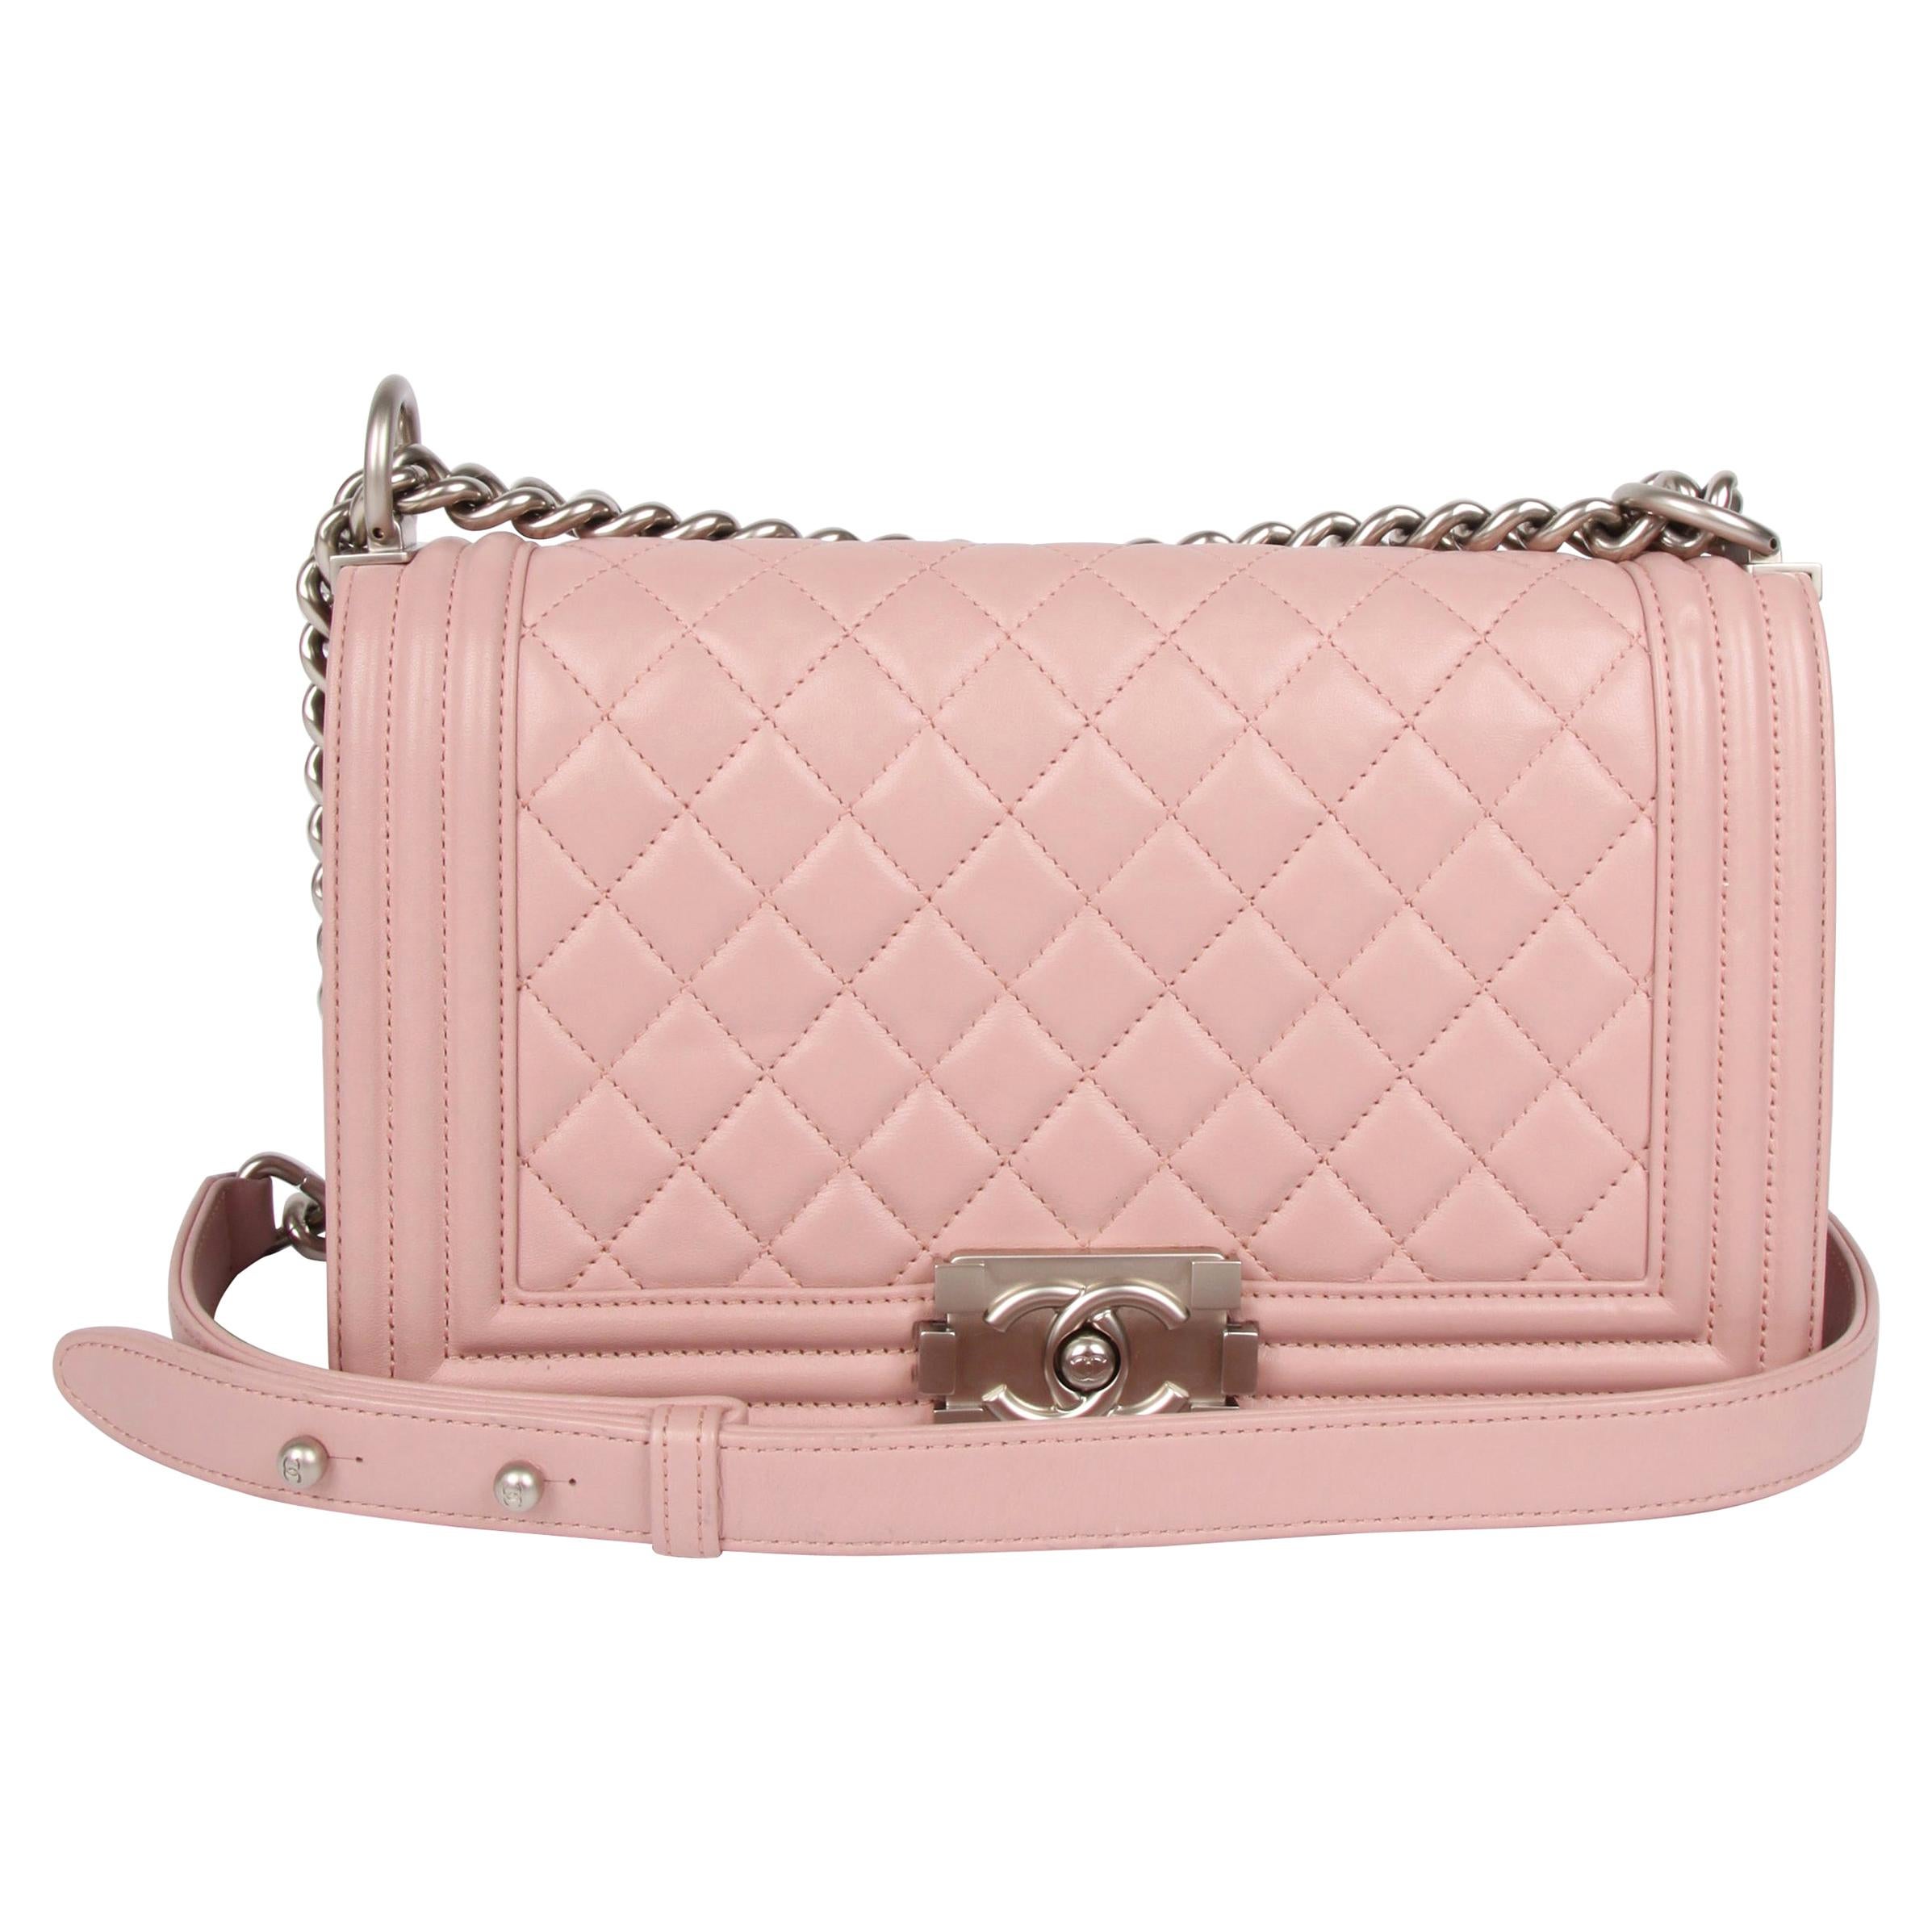 Chanel Le Boy Bag Medium - dusty pale pink